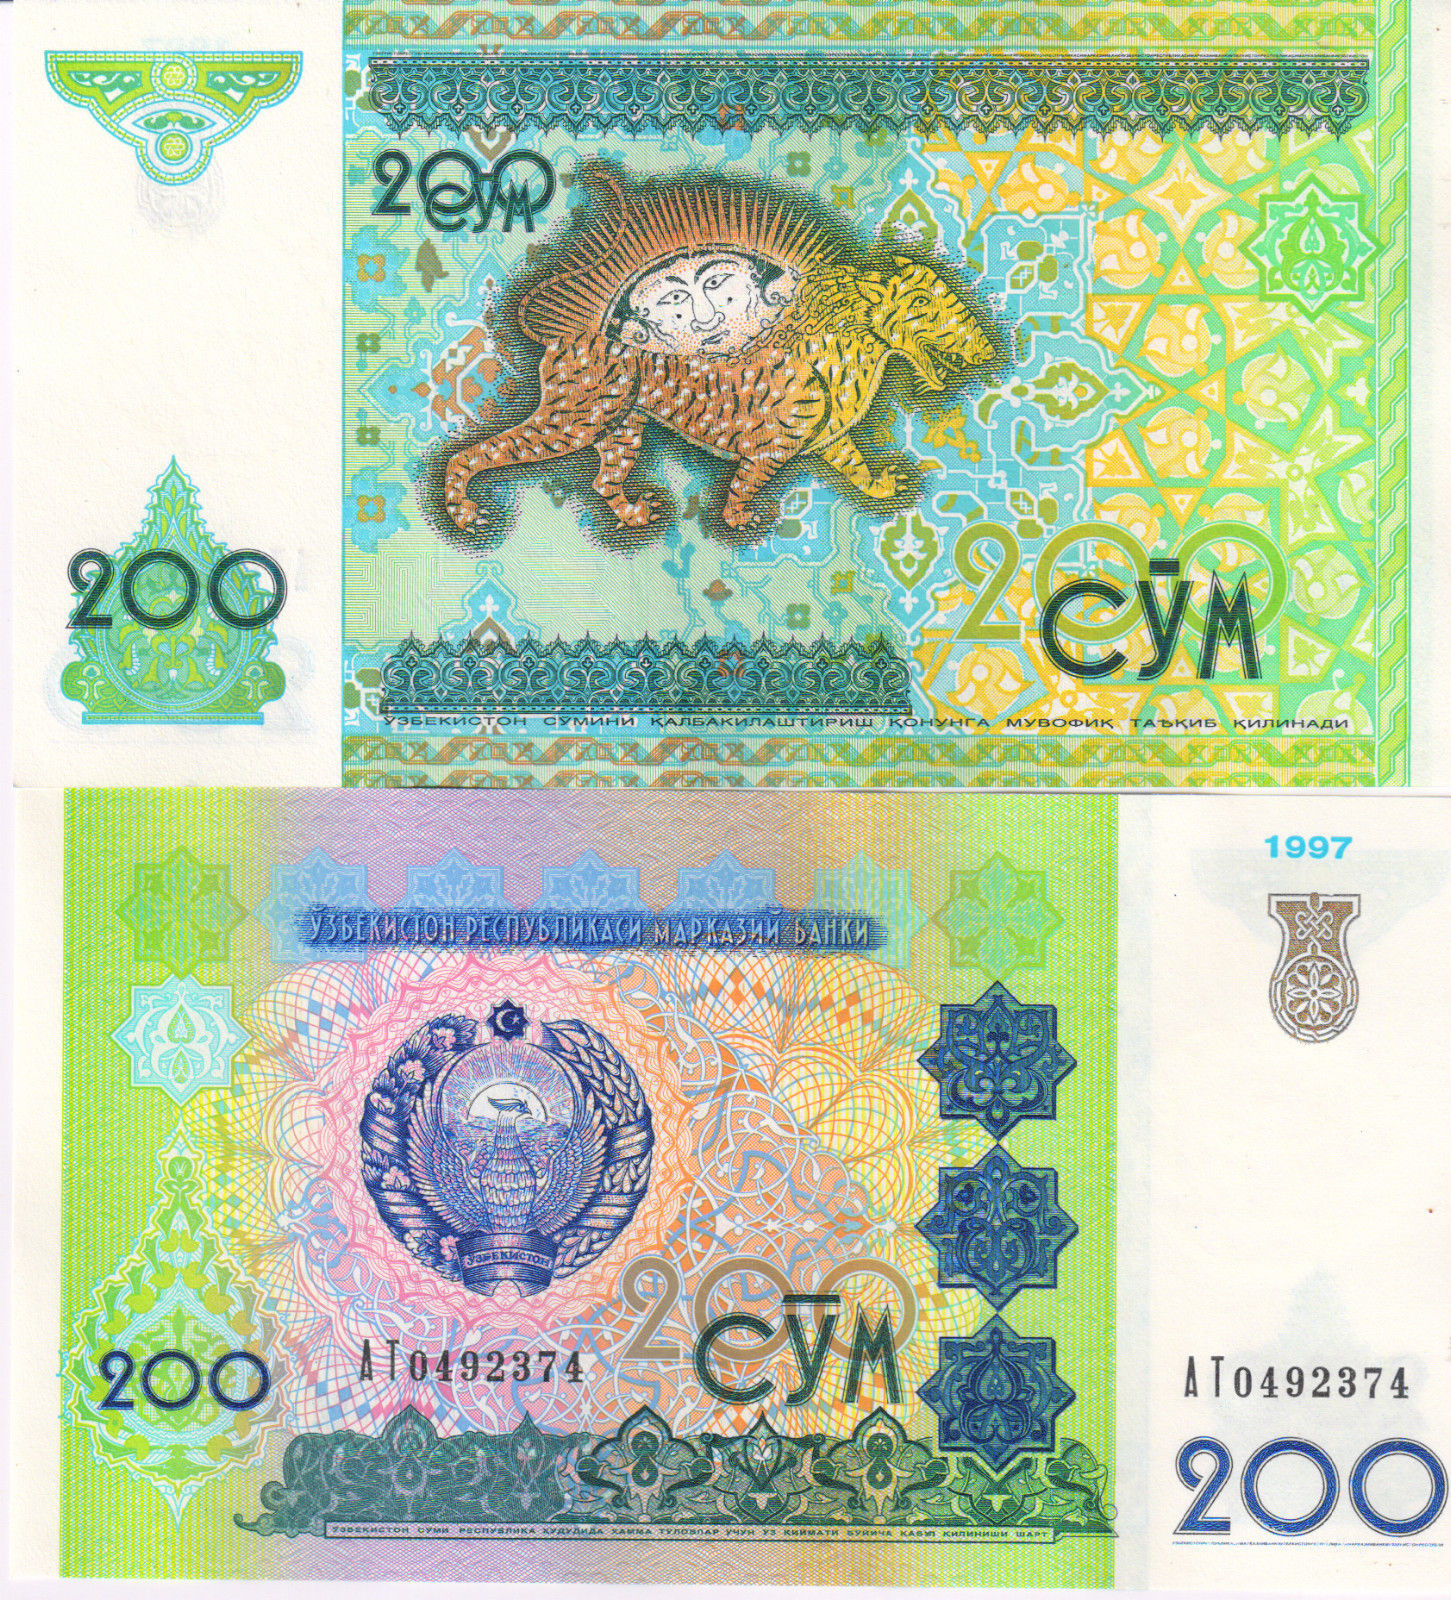 Н сум. Деньги Узбекистана. Узбекский сум. Валюта Узбекистана. Узбекские купюры.